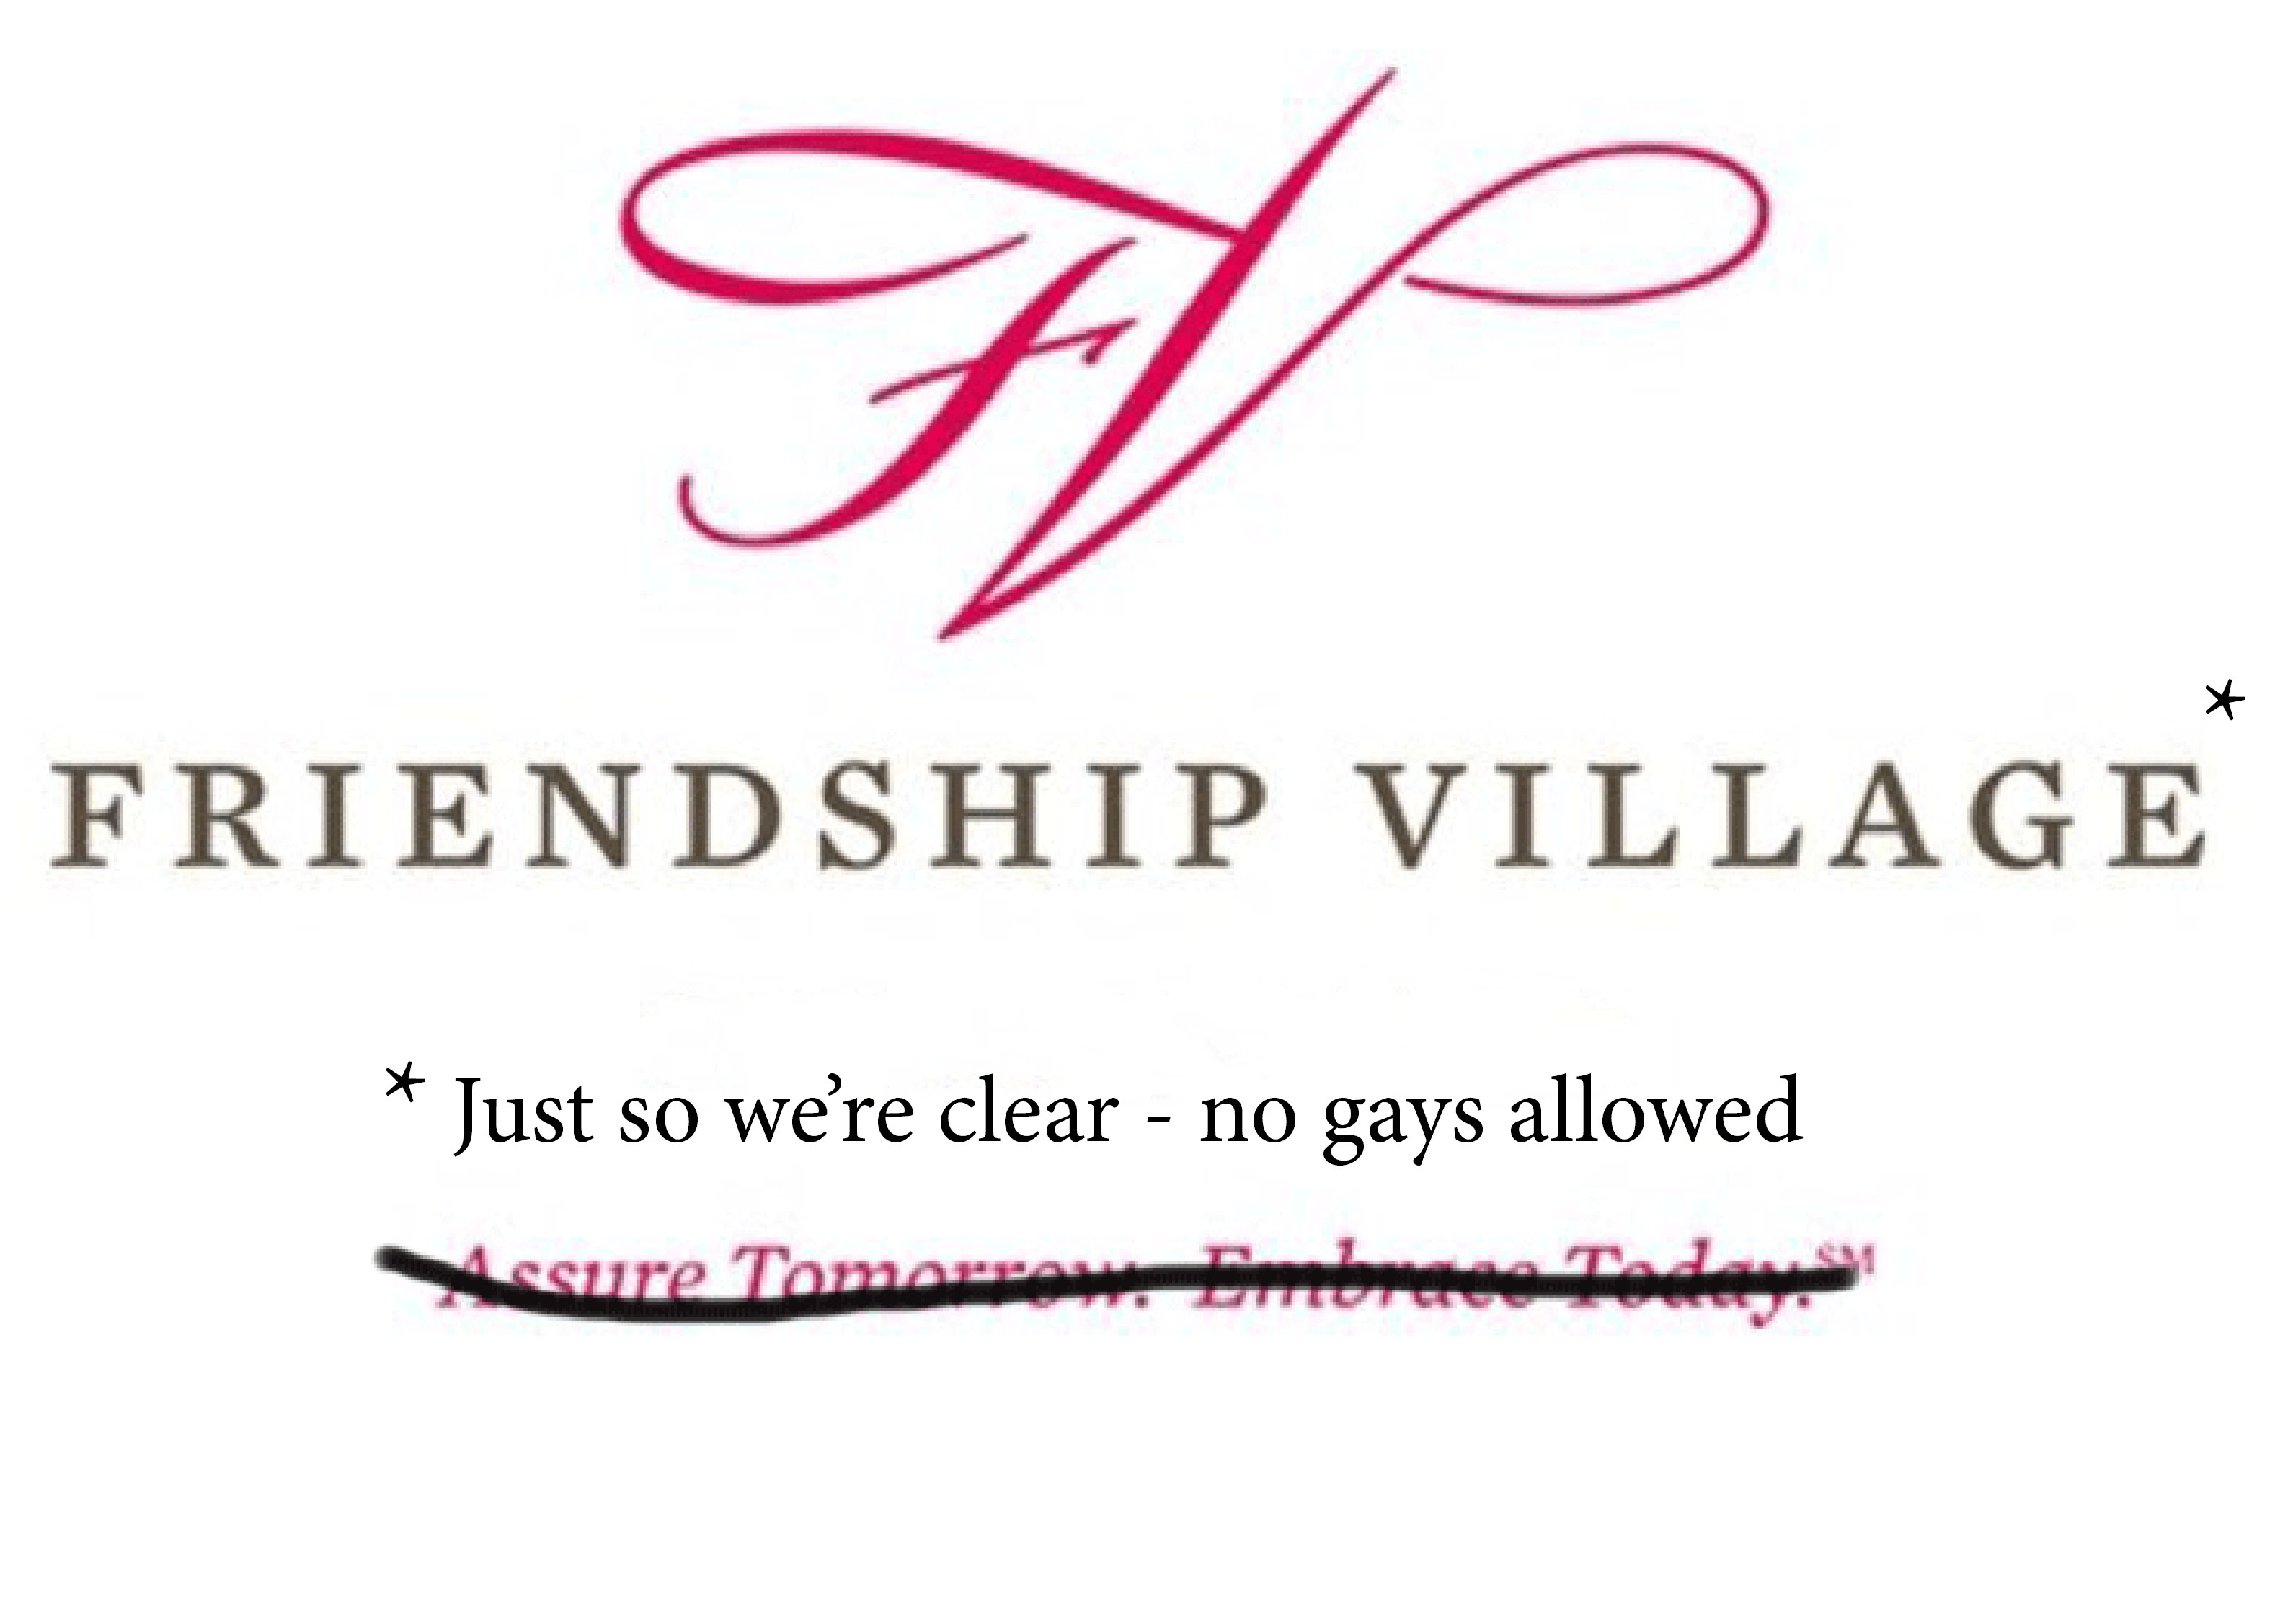 Friendship village gay discrimination